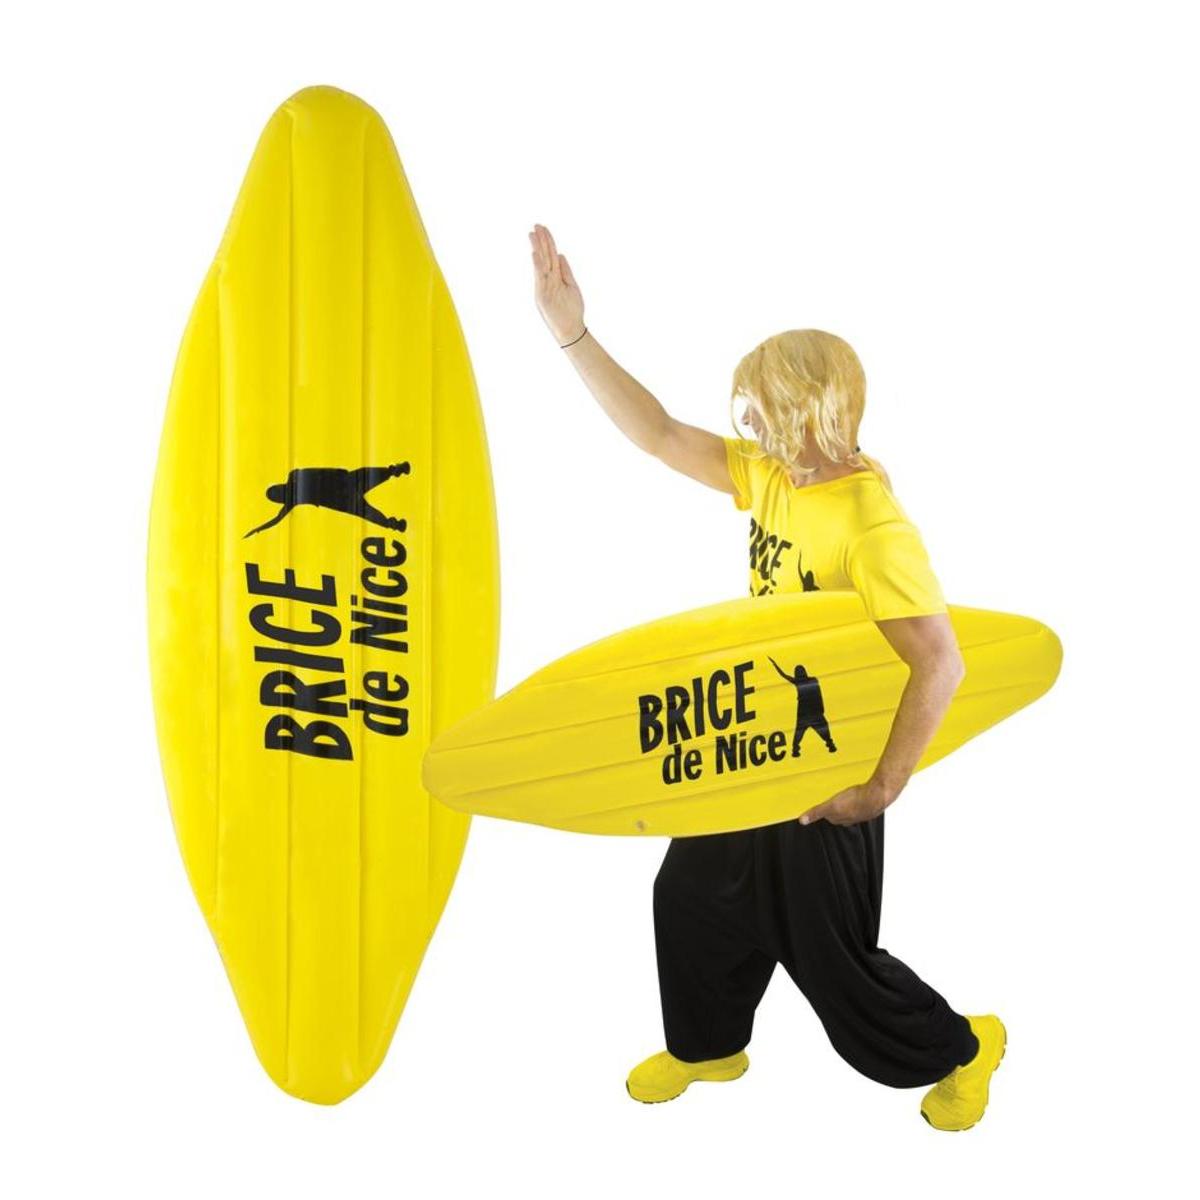 Planche de surf gonflable Brice de Nice - L 27 x H 1 x l 16 cm - Jaune - PTIT CLOWN